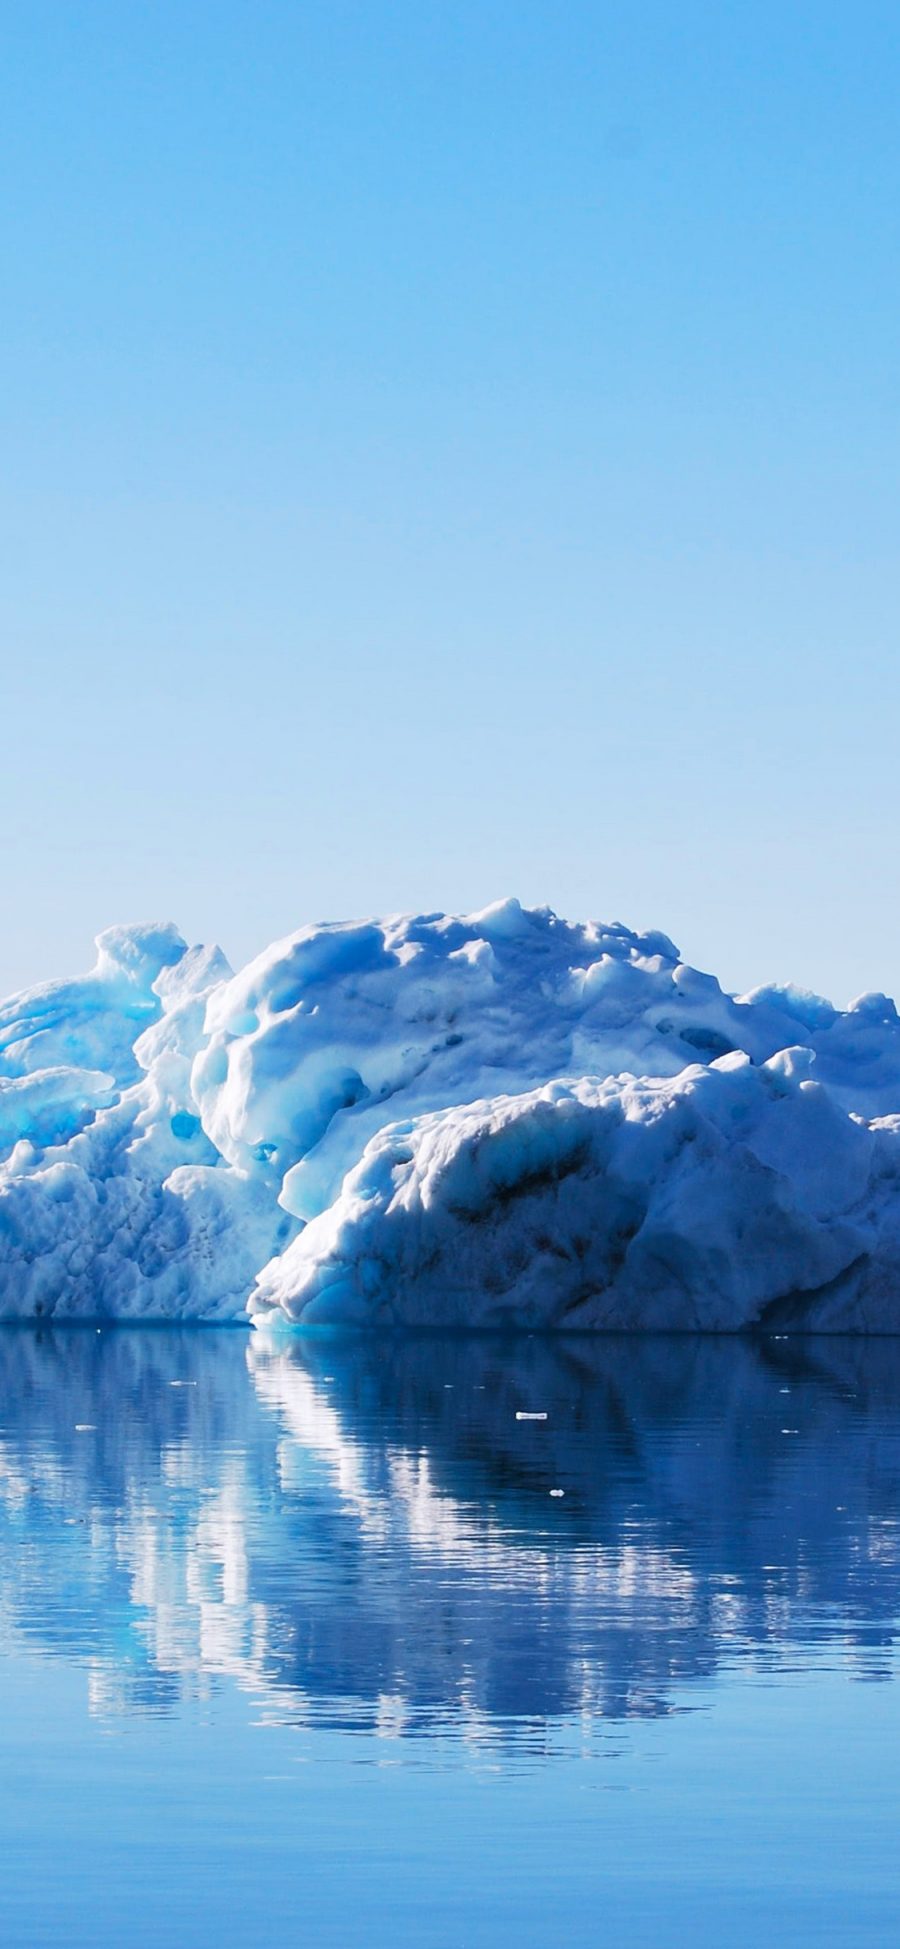 [2436×1125]冰山 冰块 倒影 水面 蓝色 苹果手机壁纸图片